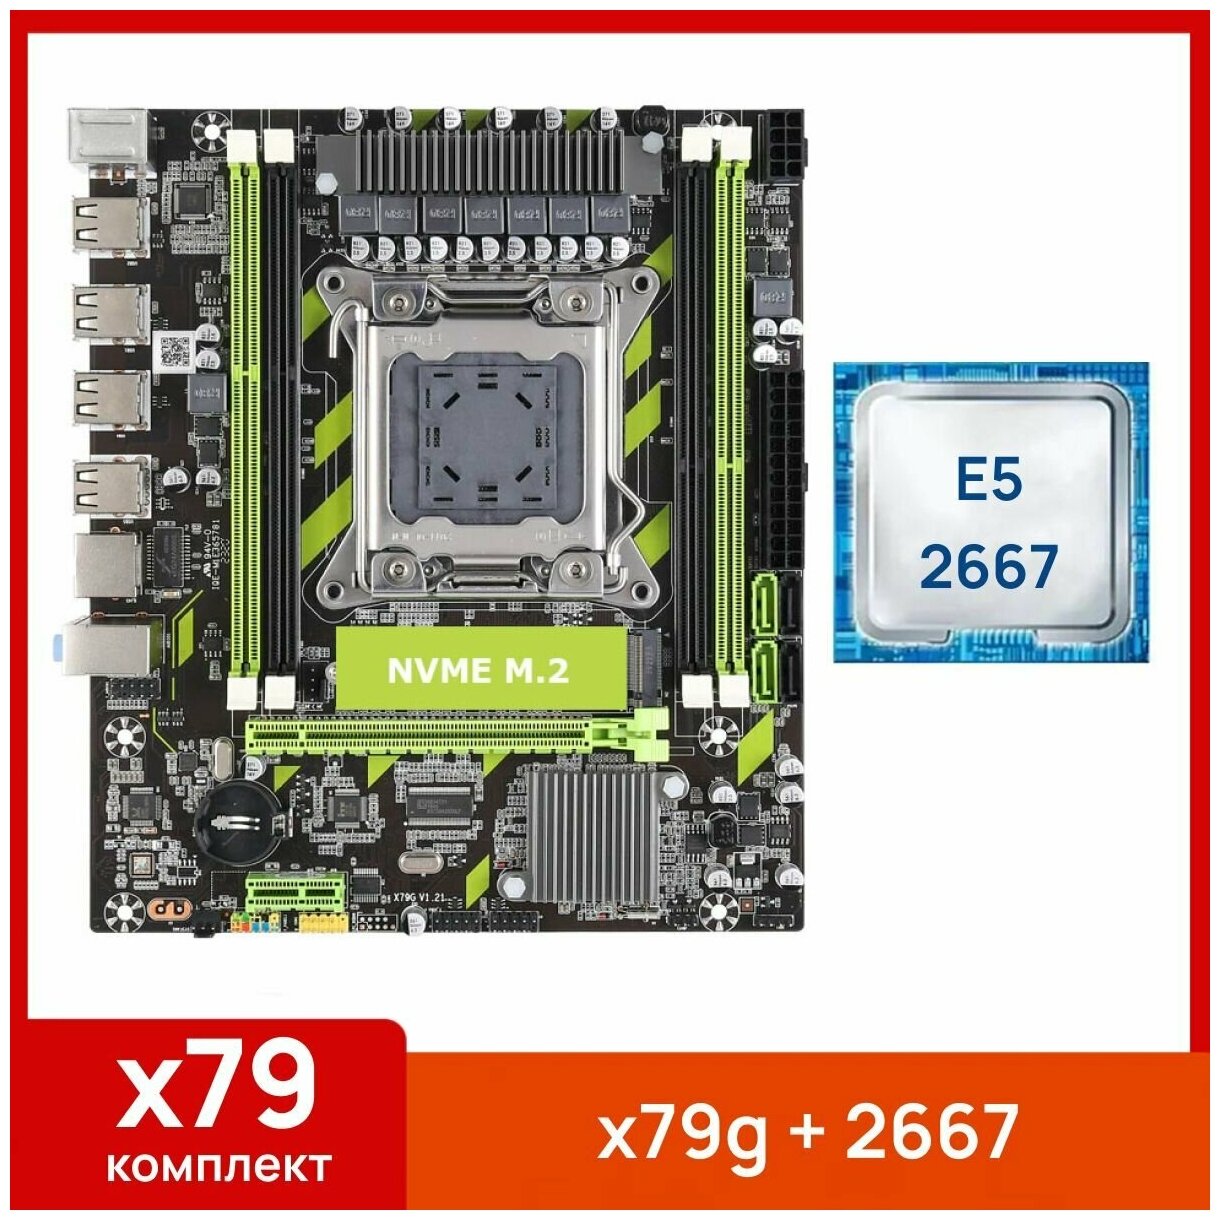 Комплект: Atermiter x79g + Xeon E5 2667